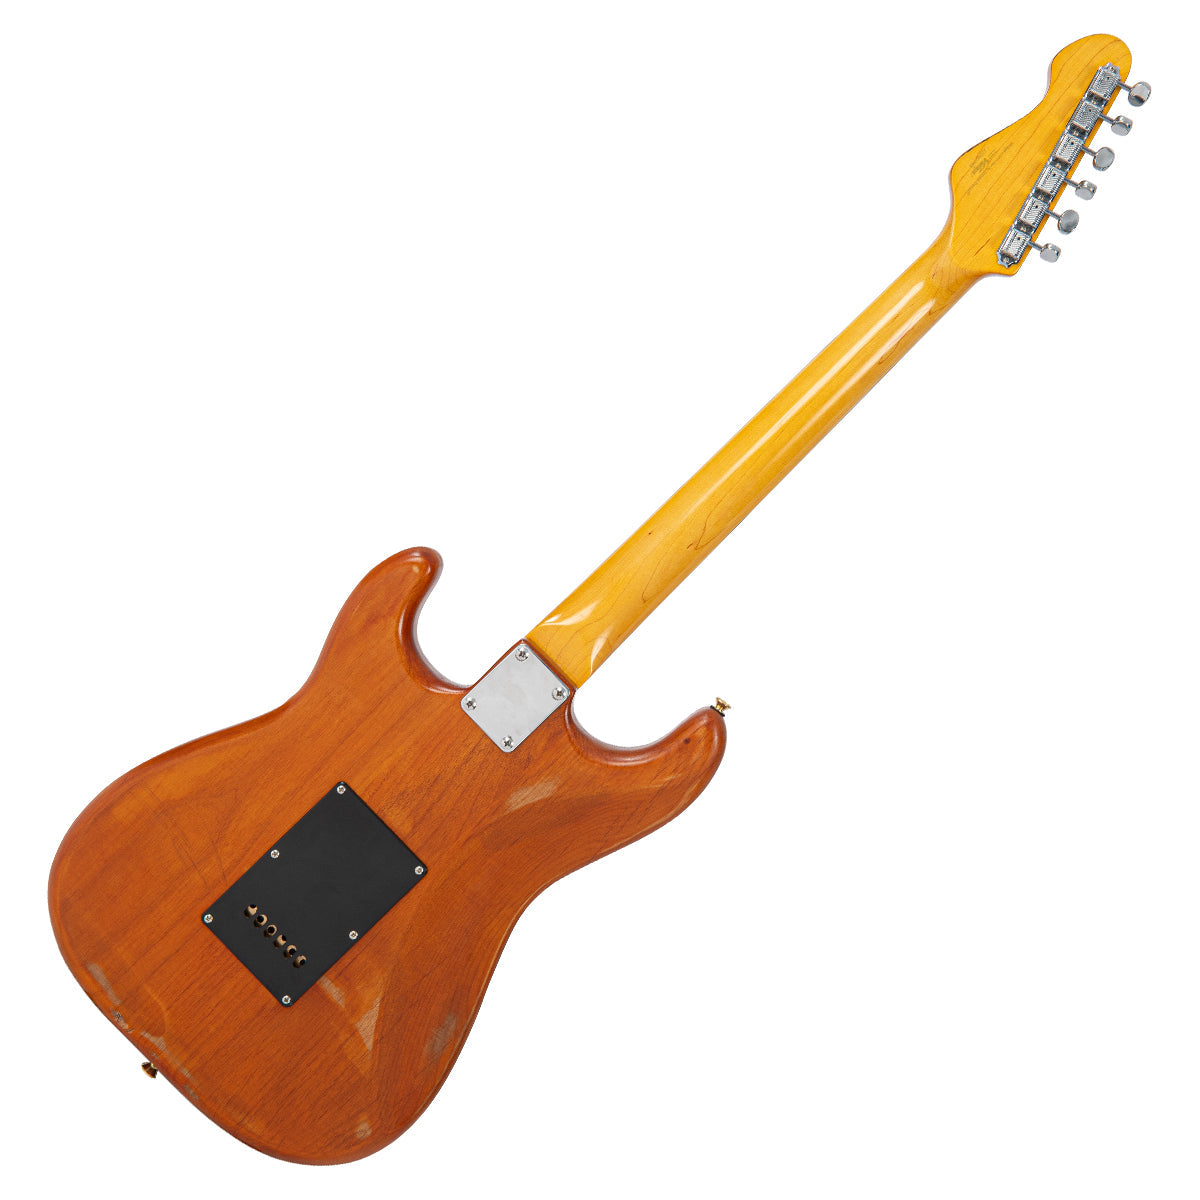 SOLD - Vintage V6 ProShop Custom-Build ~ Fast Eddie Style Tribute, Electrics for sale at Richards Guitars.